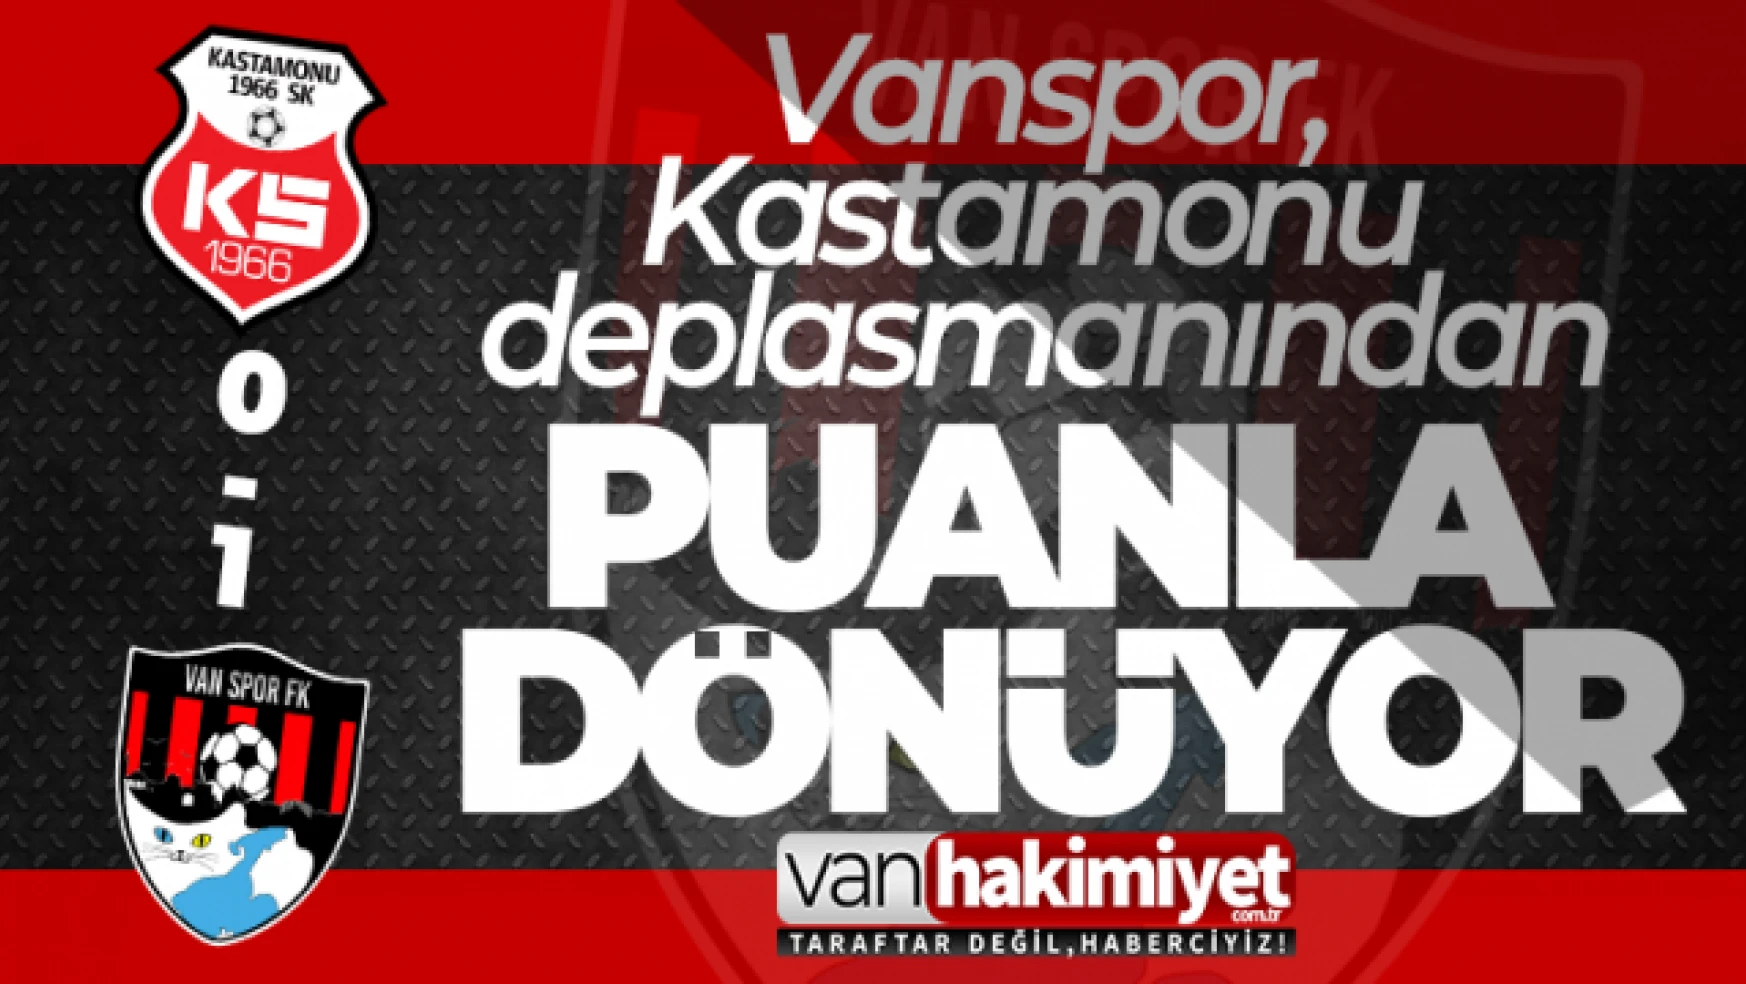 Vanspor, Kastamonuspor'u 1-0 mağlup etti